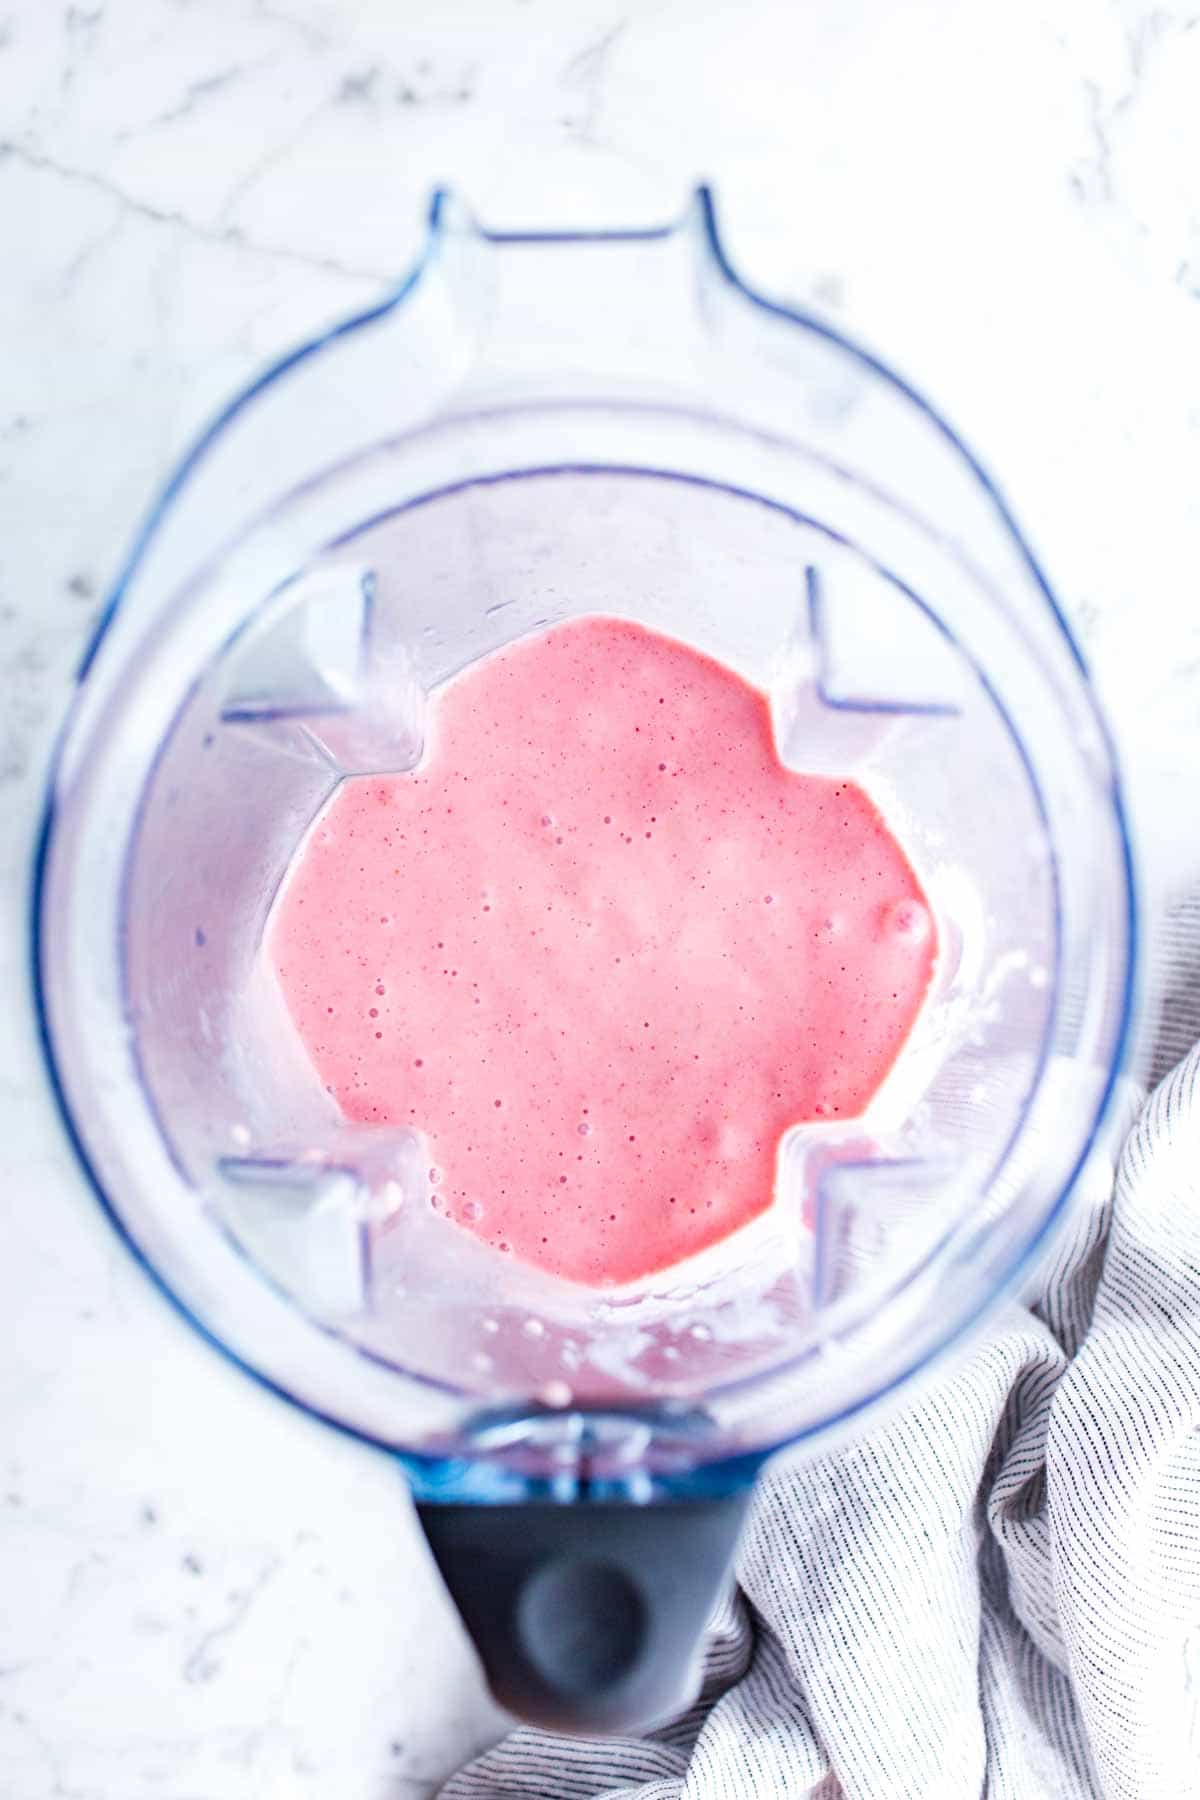 Blended strawberry banana milk shake in a blender pitcher.